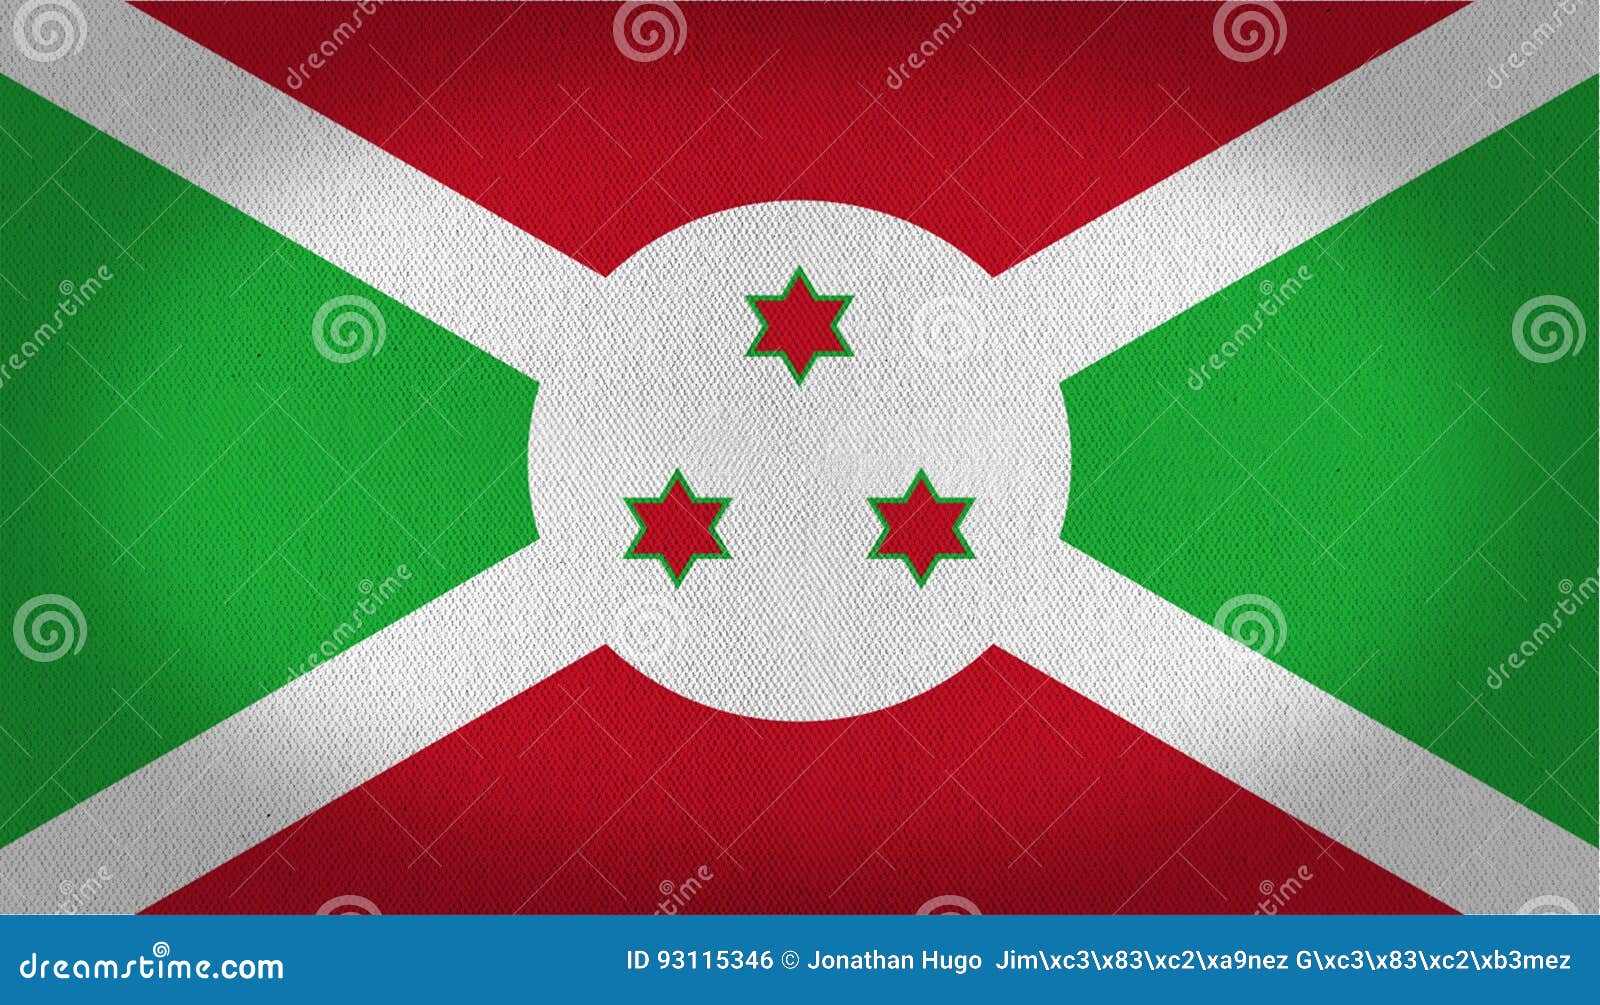 Cờ Burundi được tạo nên với màu xanh lá cây và đỏ rực, tượng trưng cho tự do và độc lập. Hãy để hình ảnh này giúp bạn khám phá vẻ đẹp và bản sắc đặc trưng của đất nước Burundi, một niềm tự hào của châu Phi.